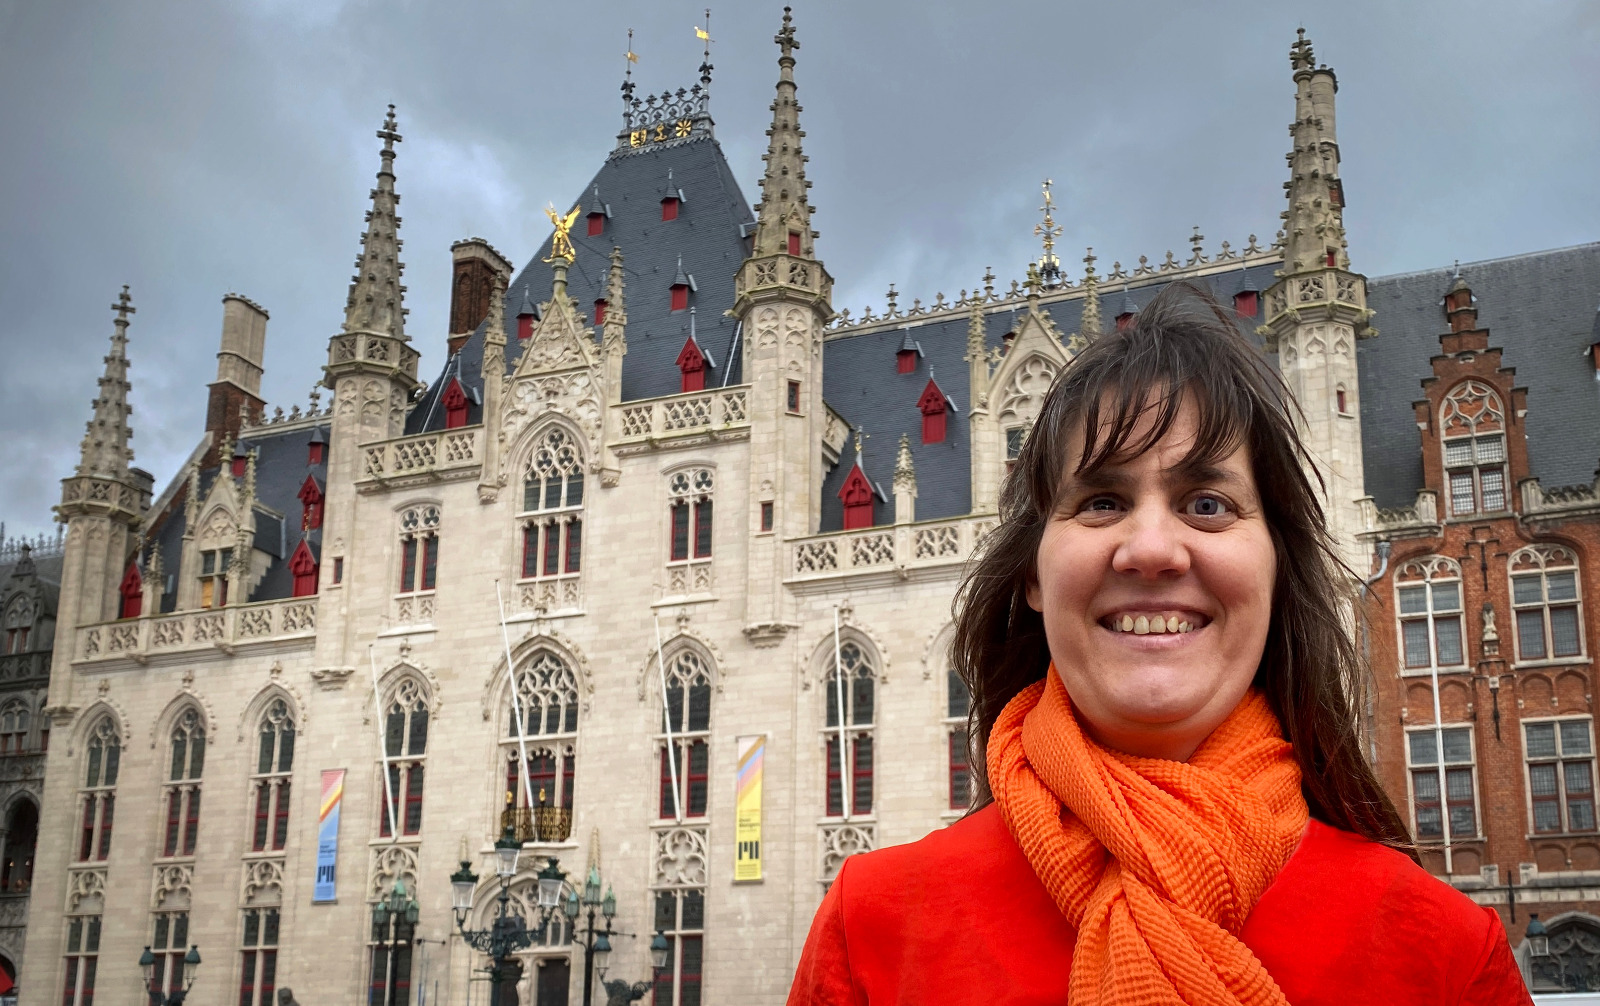 Monique poseert glimlachend voor het stadhuis van Brugge in een oranje outfit